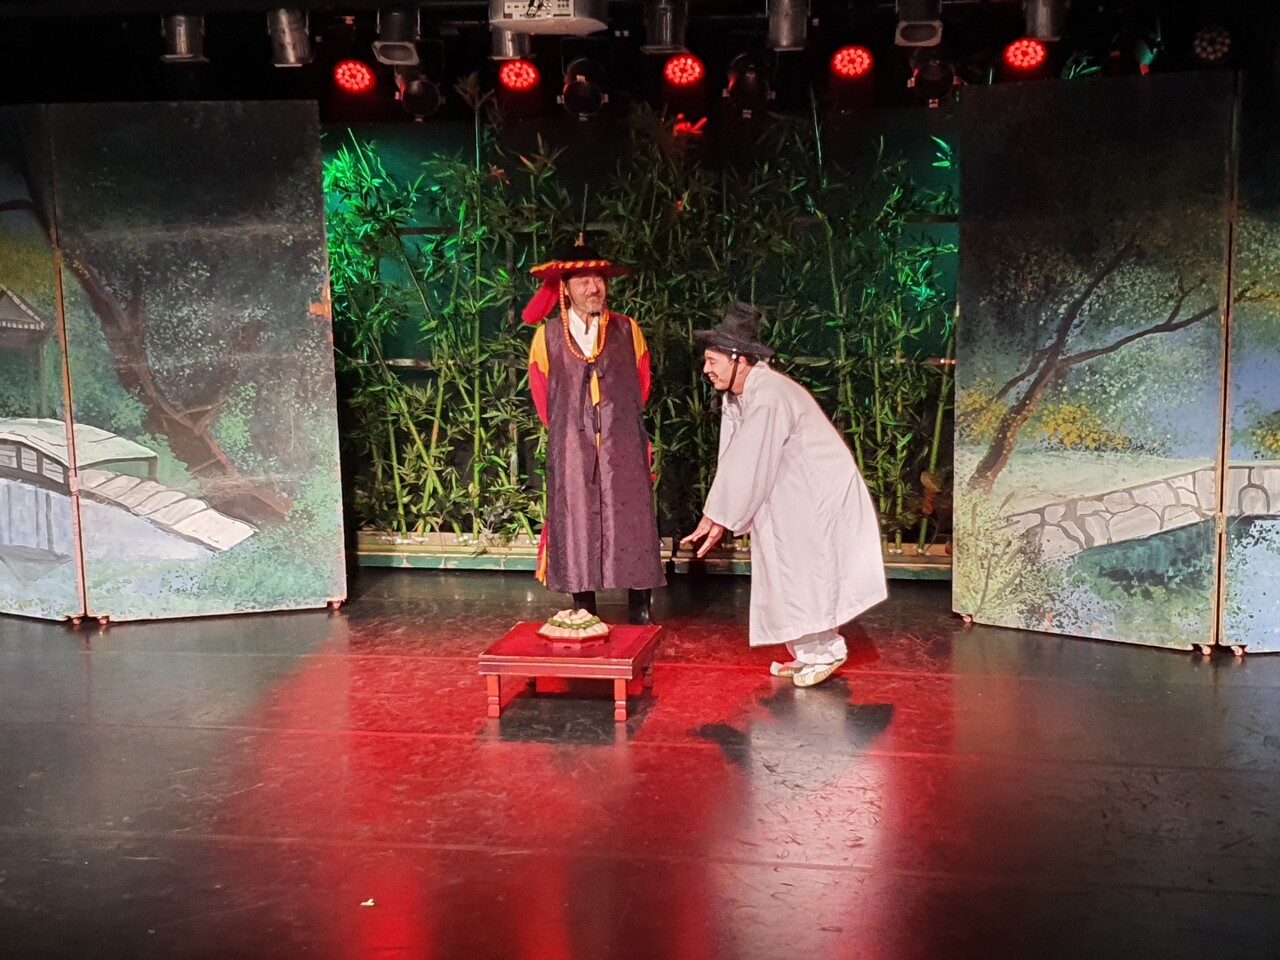 충북연극협회가 '제20회 소극장연극제'를 오는 7일부터 17일까지 청주 예술나눔터와 청주 씨어터제이에서 개최한다. 사진은 극단 개벽의 '마당놀이 춘향전'의 한 장면.